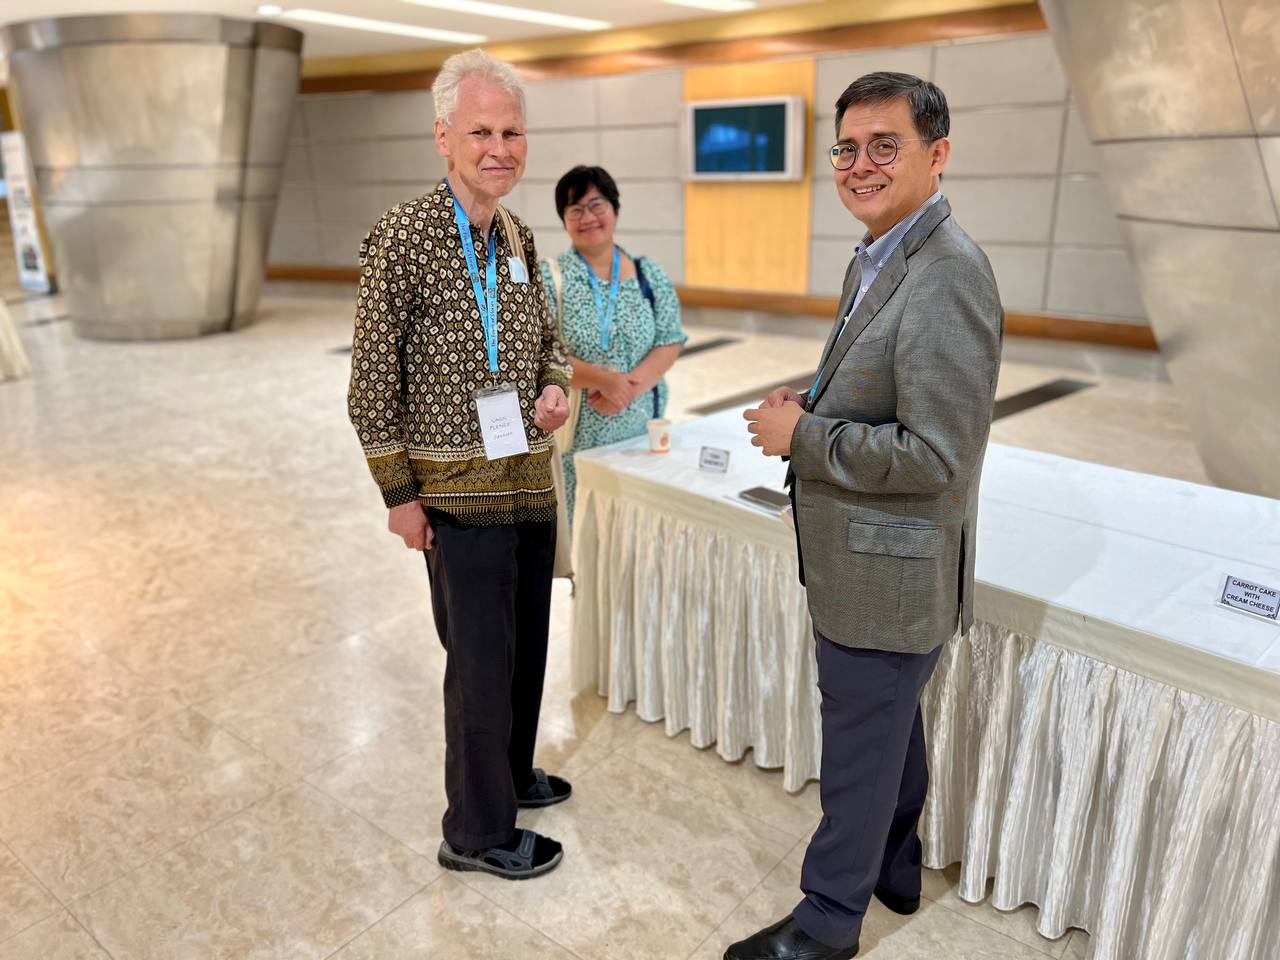 Открылся 38-й Всемирный конгресс Международного совета по детской книге в Малайзии